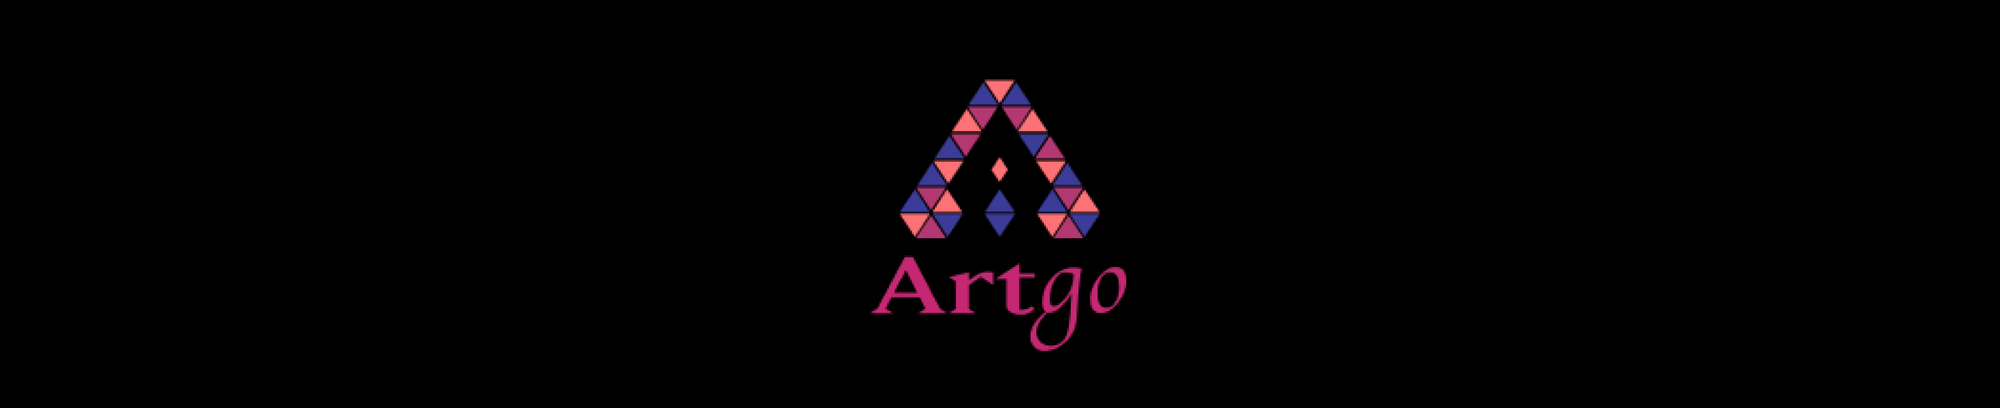 Artgo